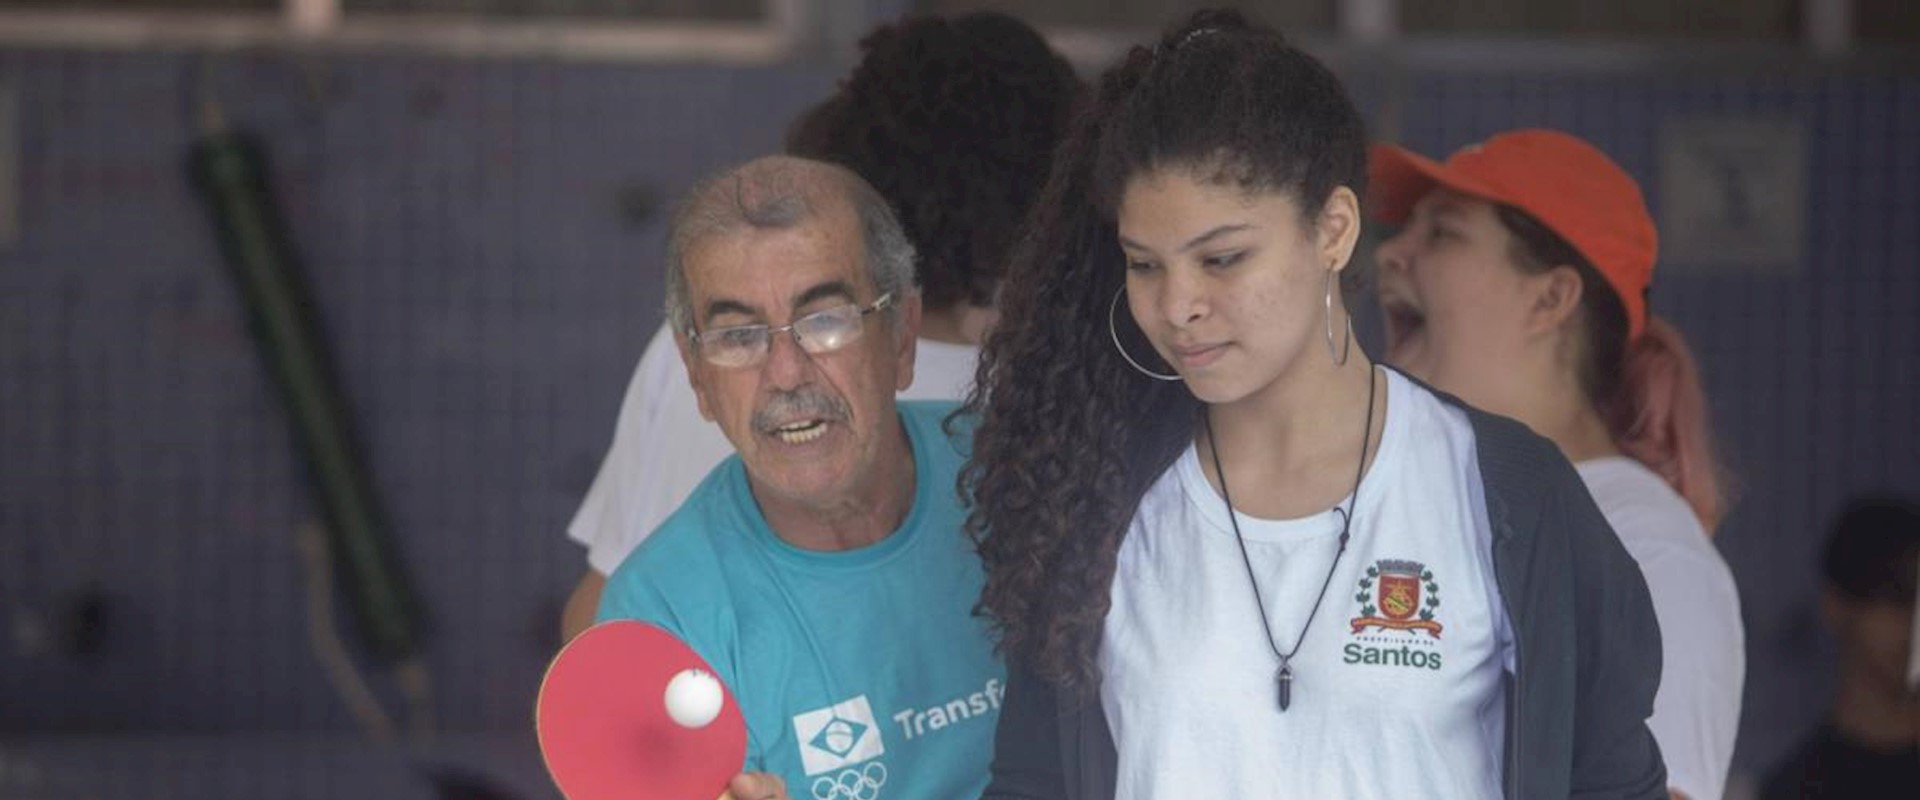 Festival Transforma, do COB, leva tênis de mesa para escolas de Santos e Rio de Janeiro